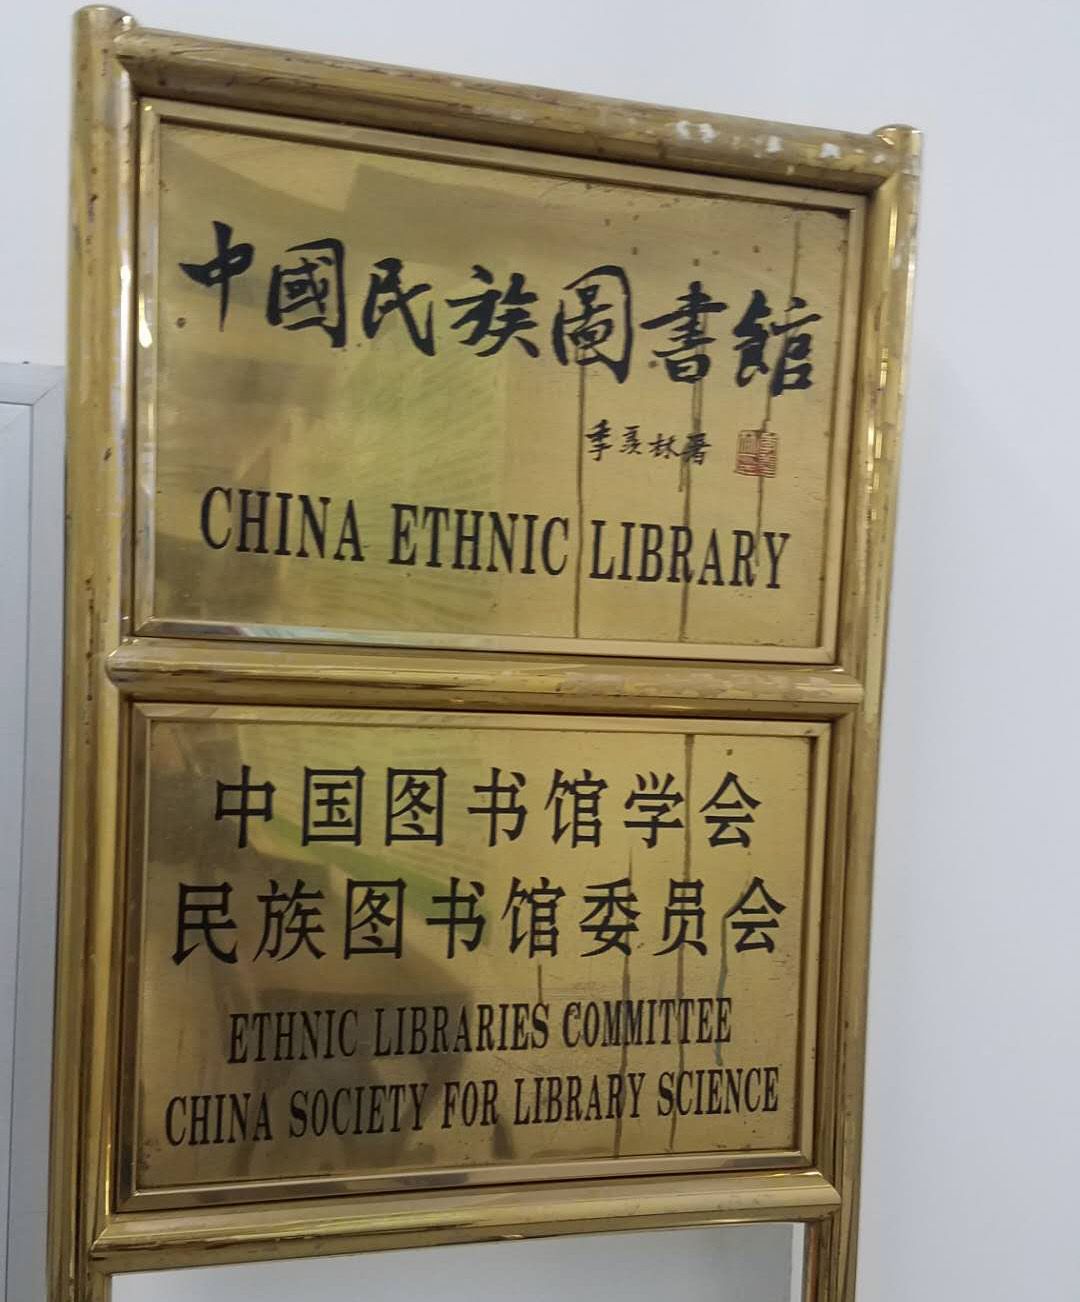 中国民族图书馆2017-08-17简介:中国民族图书馆是一所全国性的少数